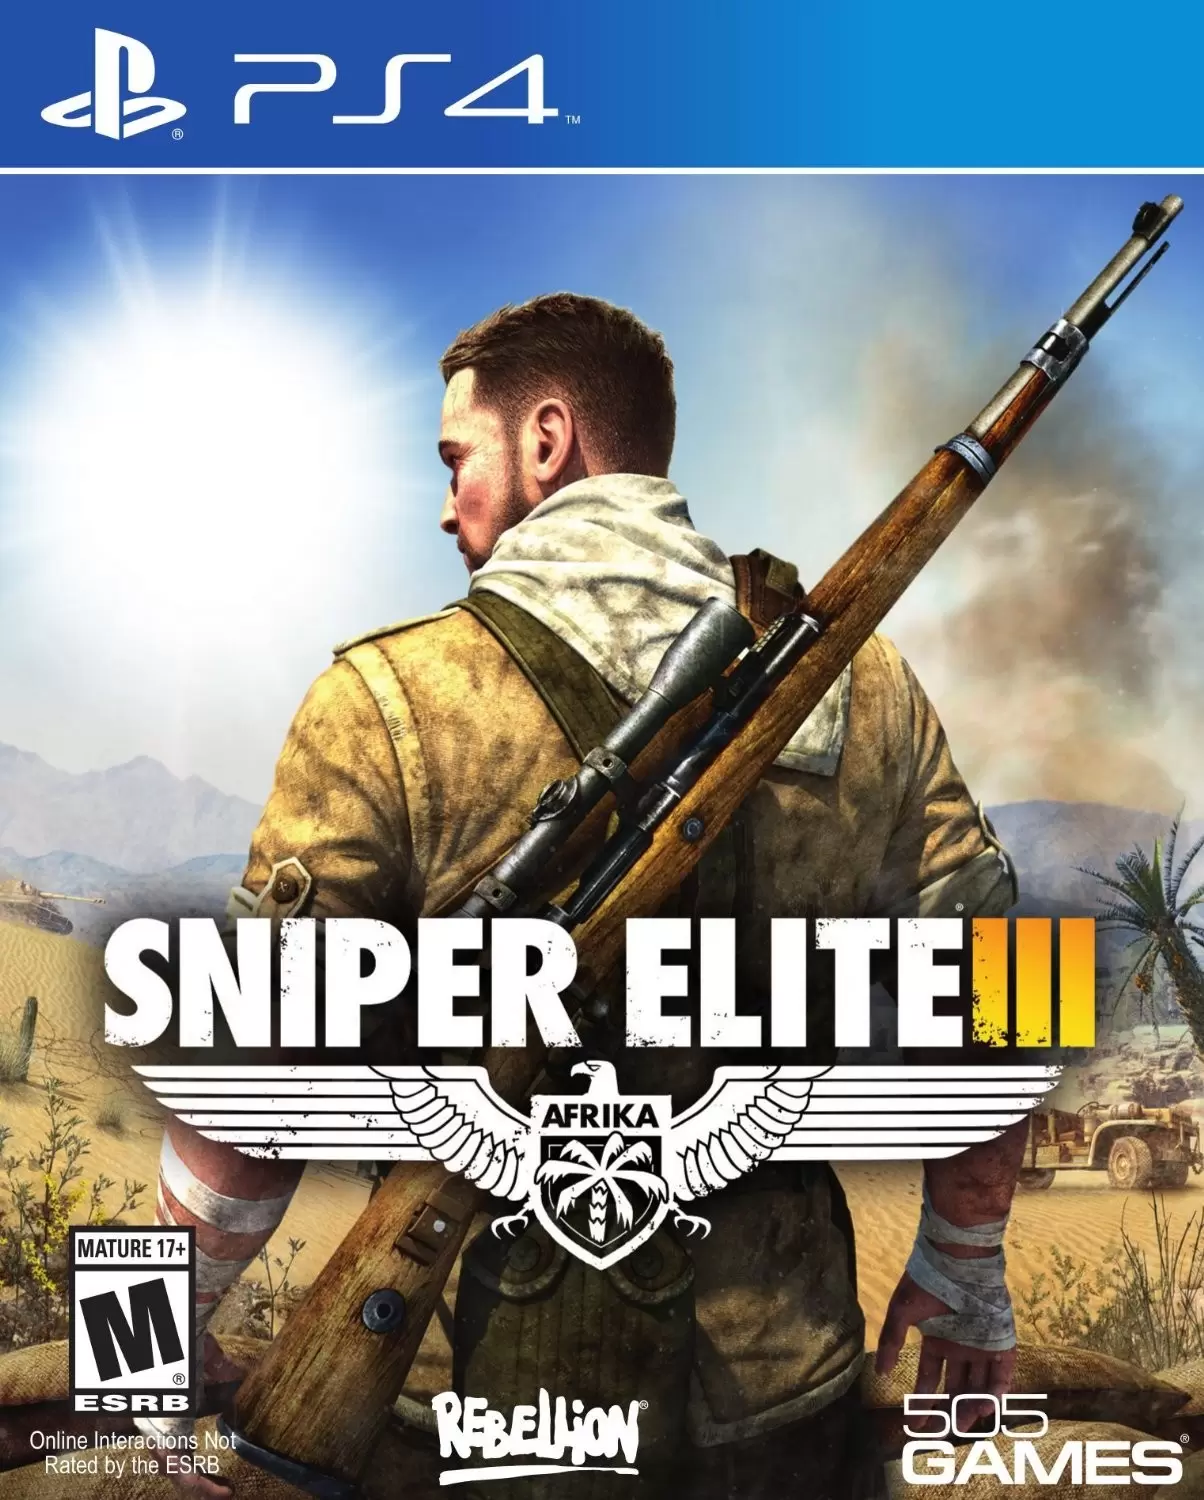 PS4 Games - Sniper Elite III